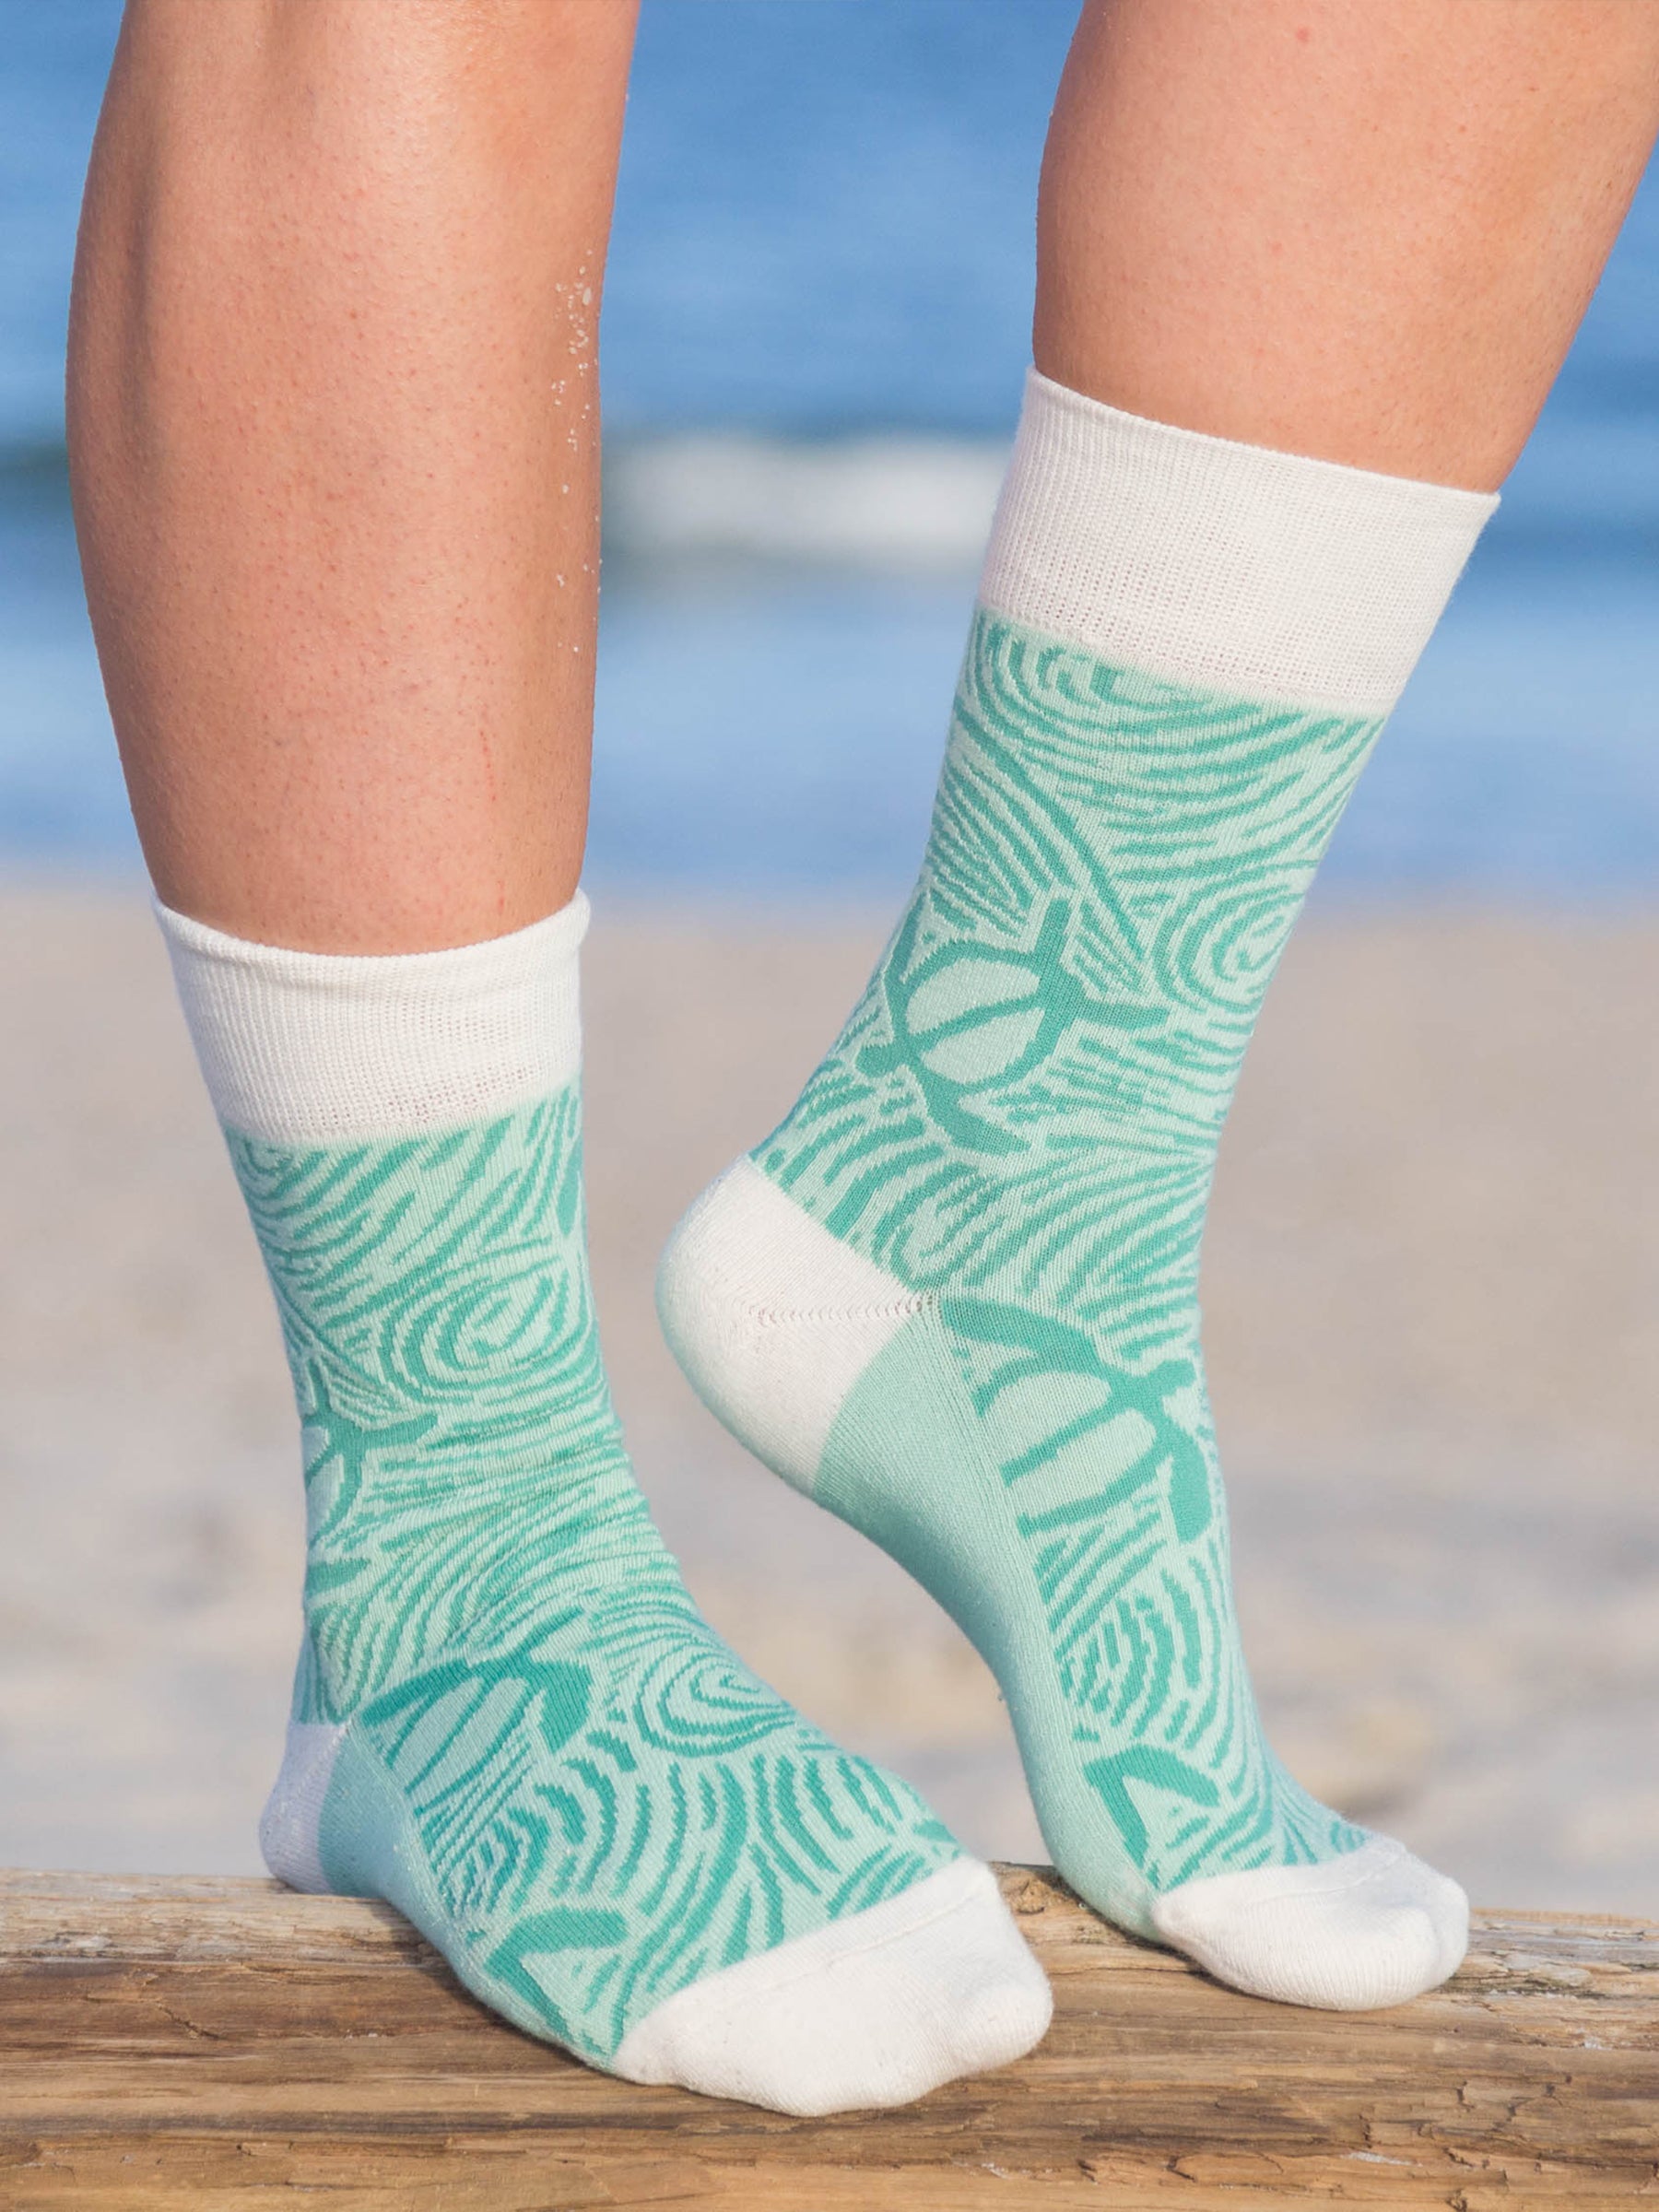 Sea Turtle Socks